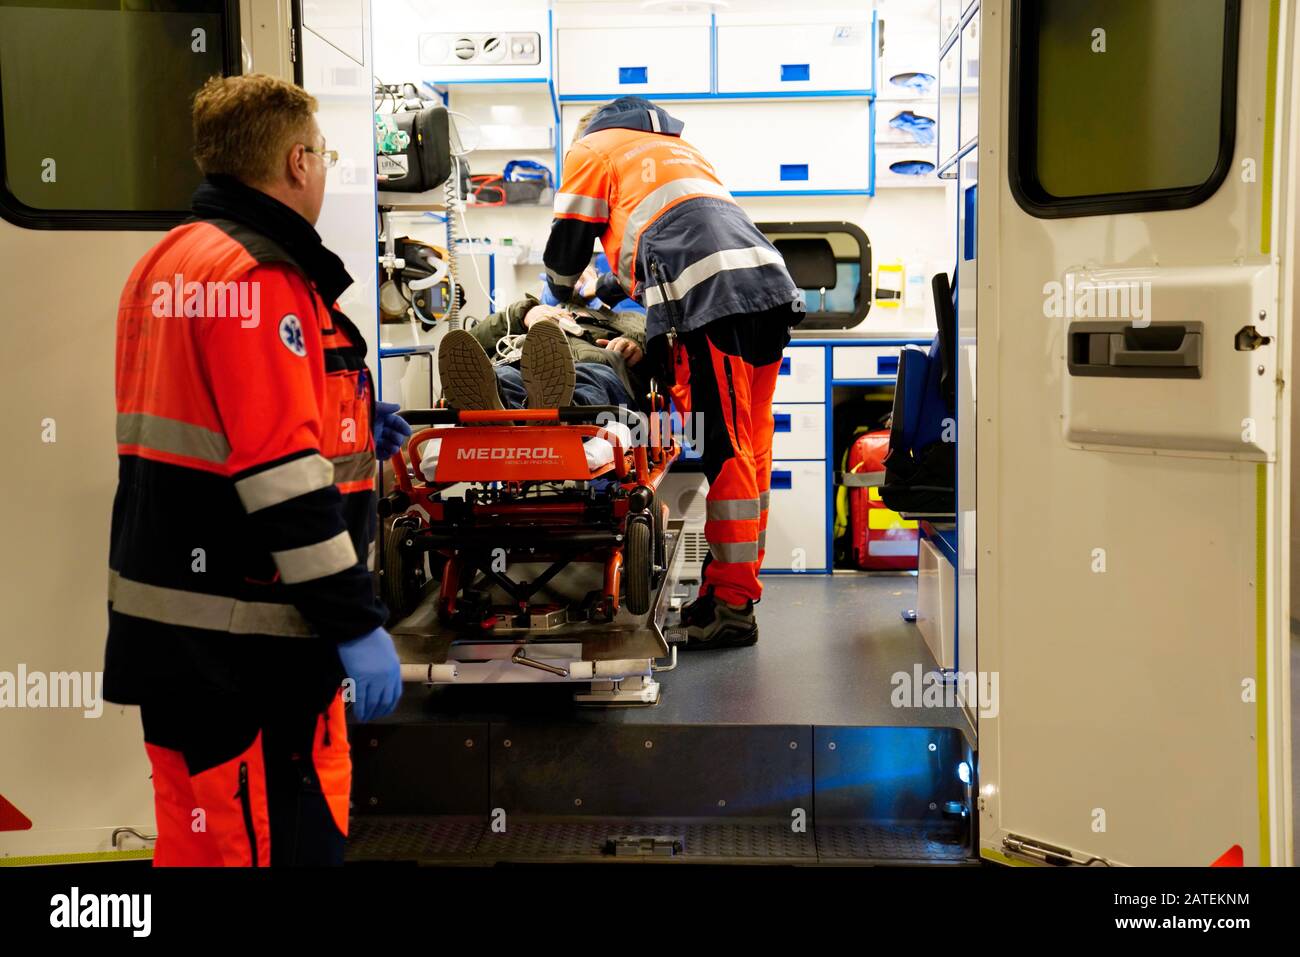 Arrivo dell'ambulanza con il paziente in ospedale, Karlovy Vary, Repubblica Ceca Foto Stock